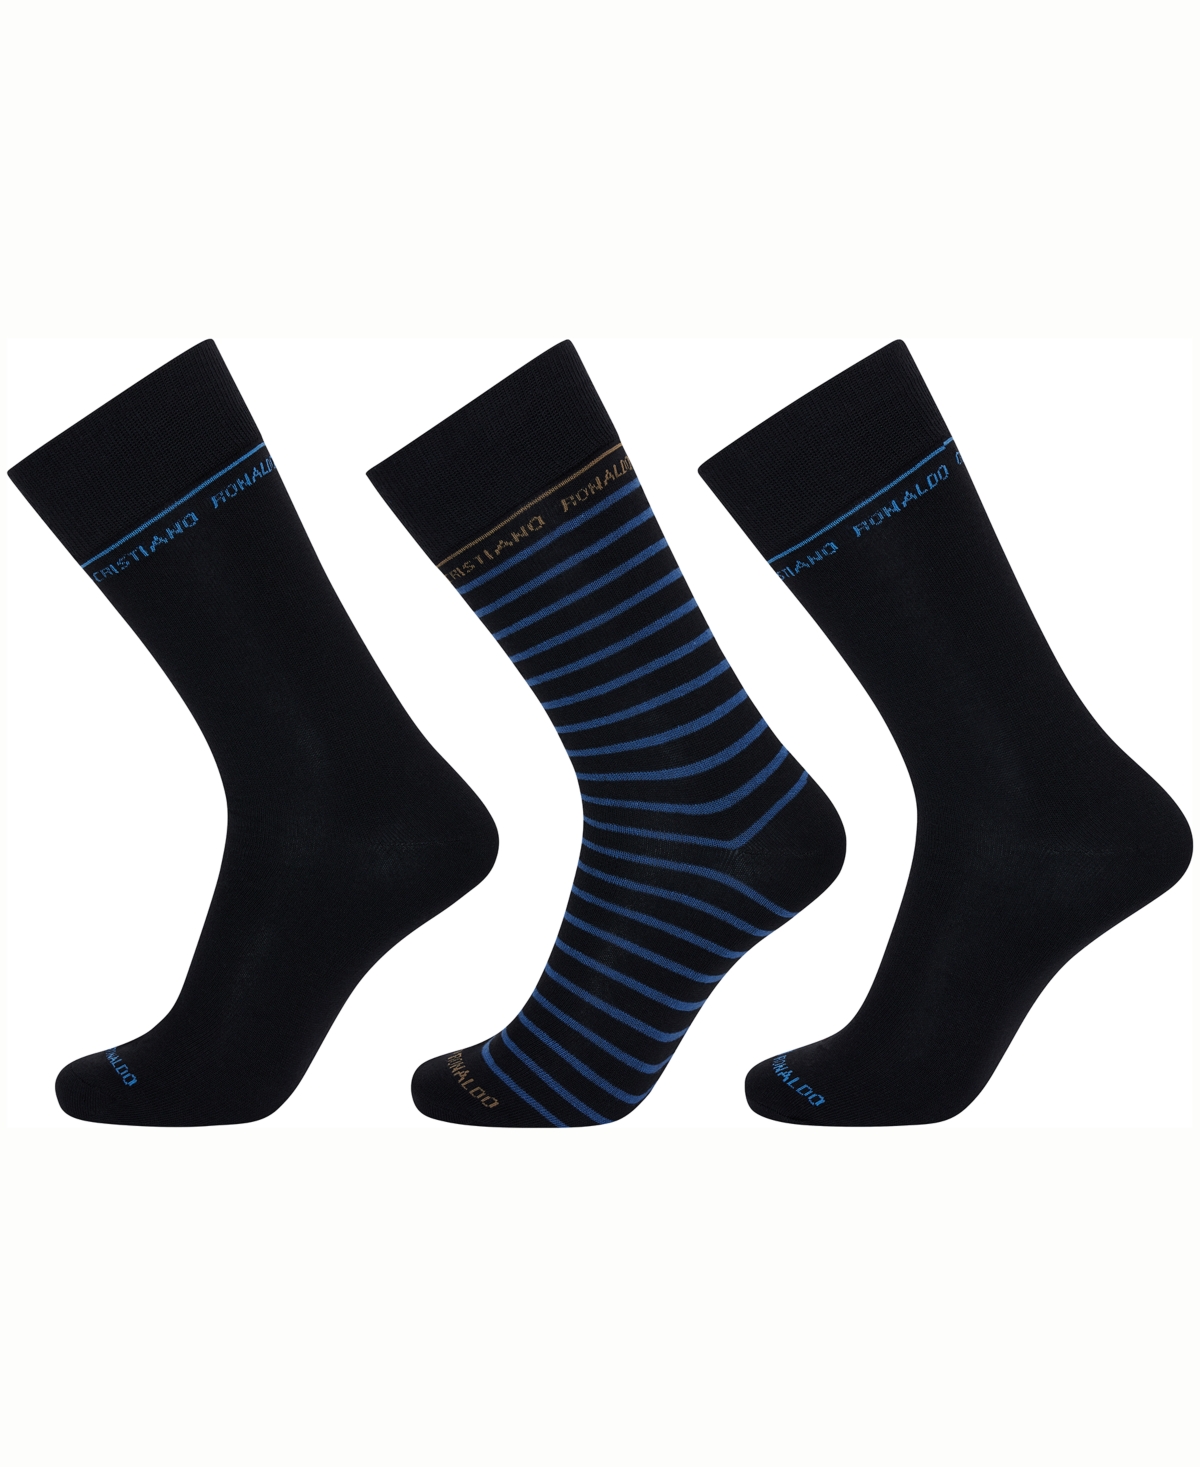 Men's Fashion Socks, Pack of 3 - Black, Blue, Gray